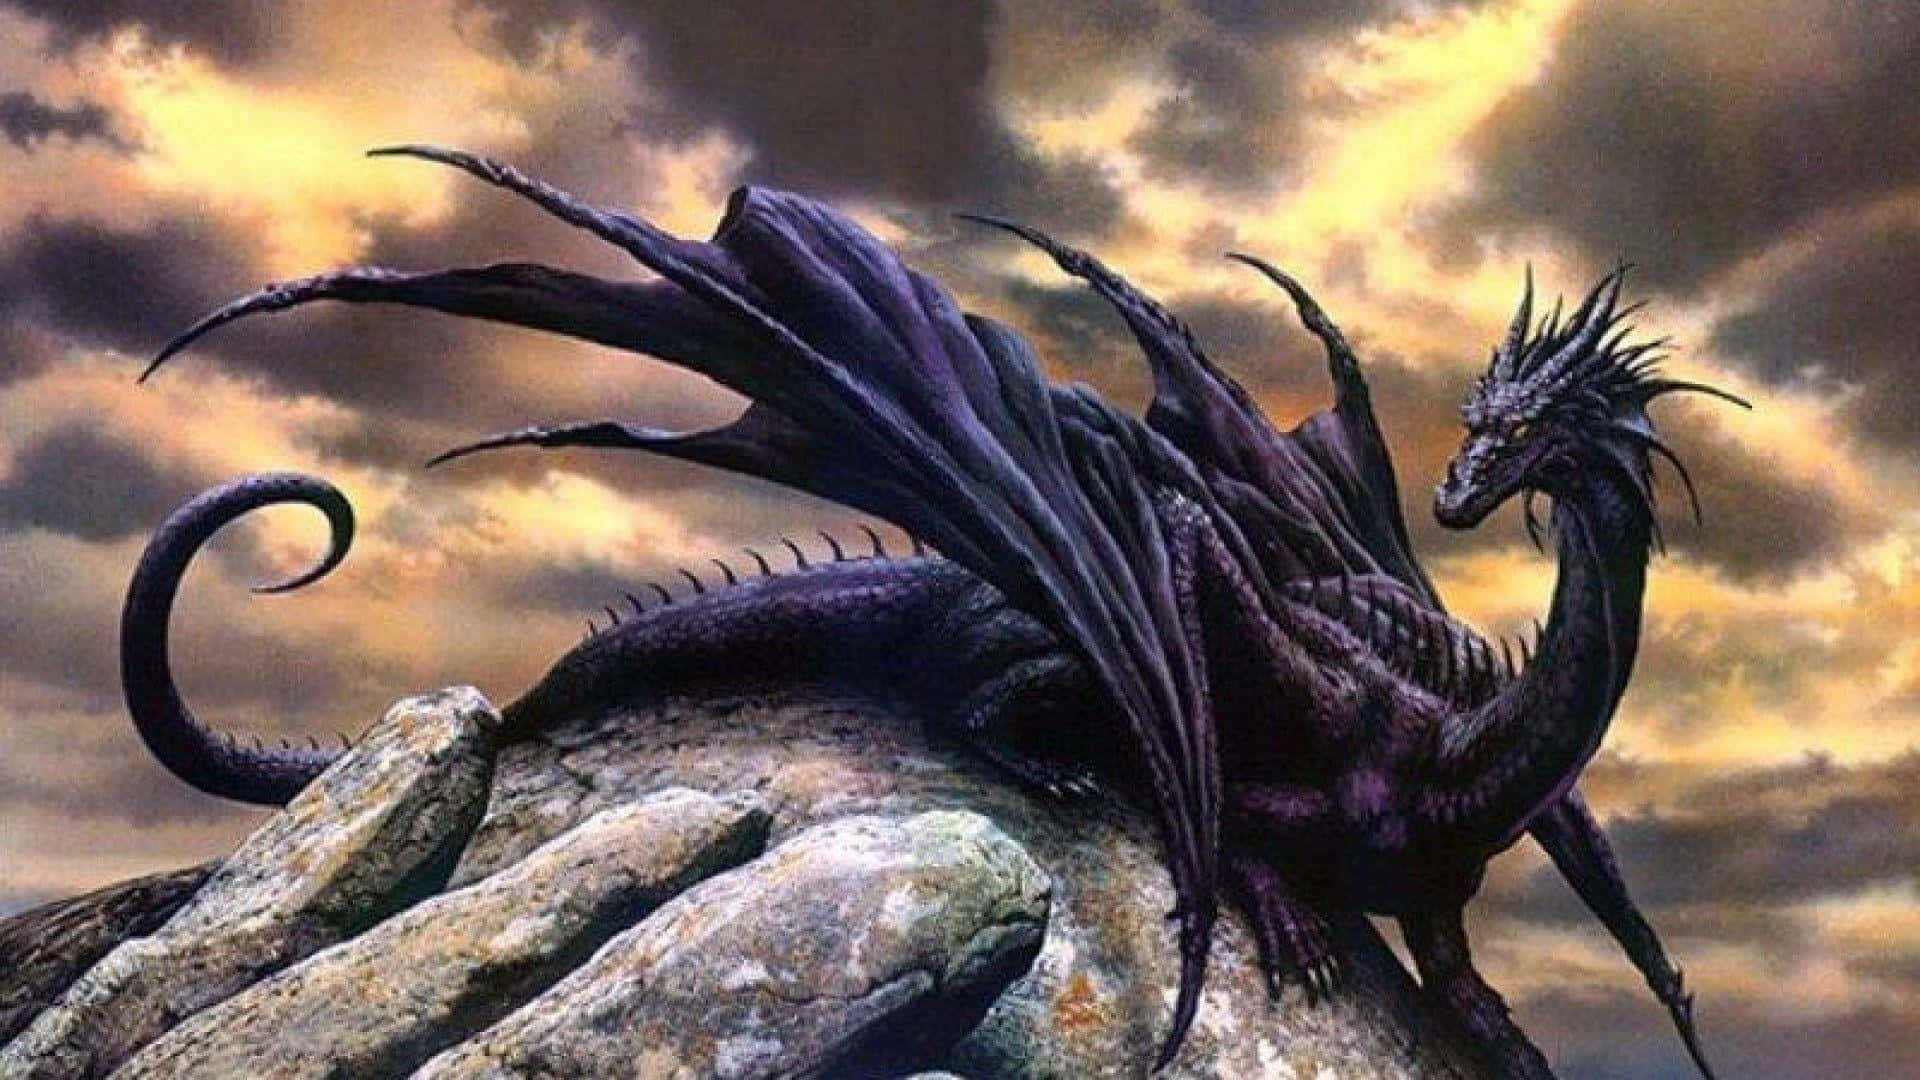 Black Dragon Sitting On A Rock Wallpaper